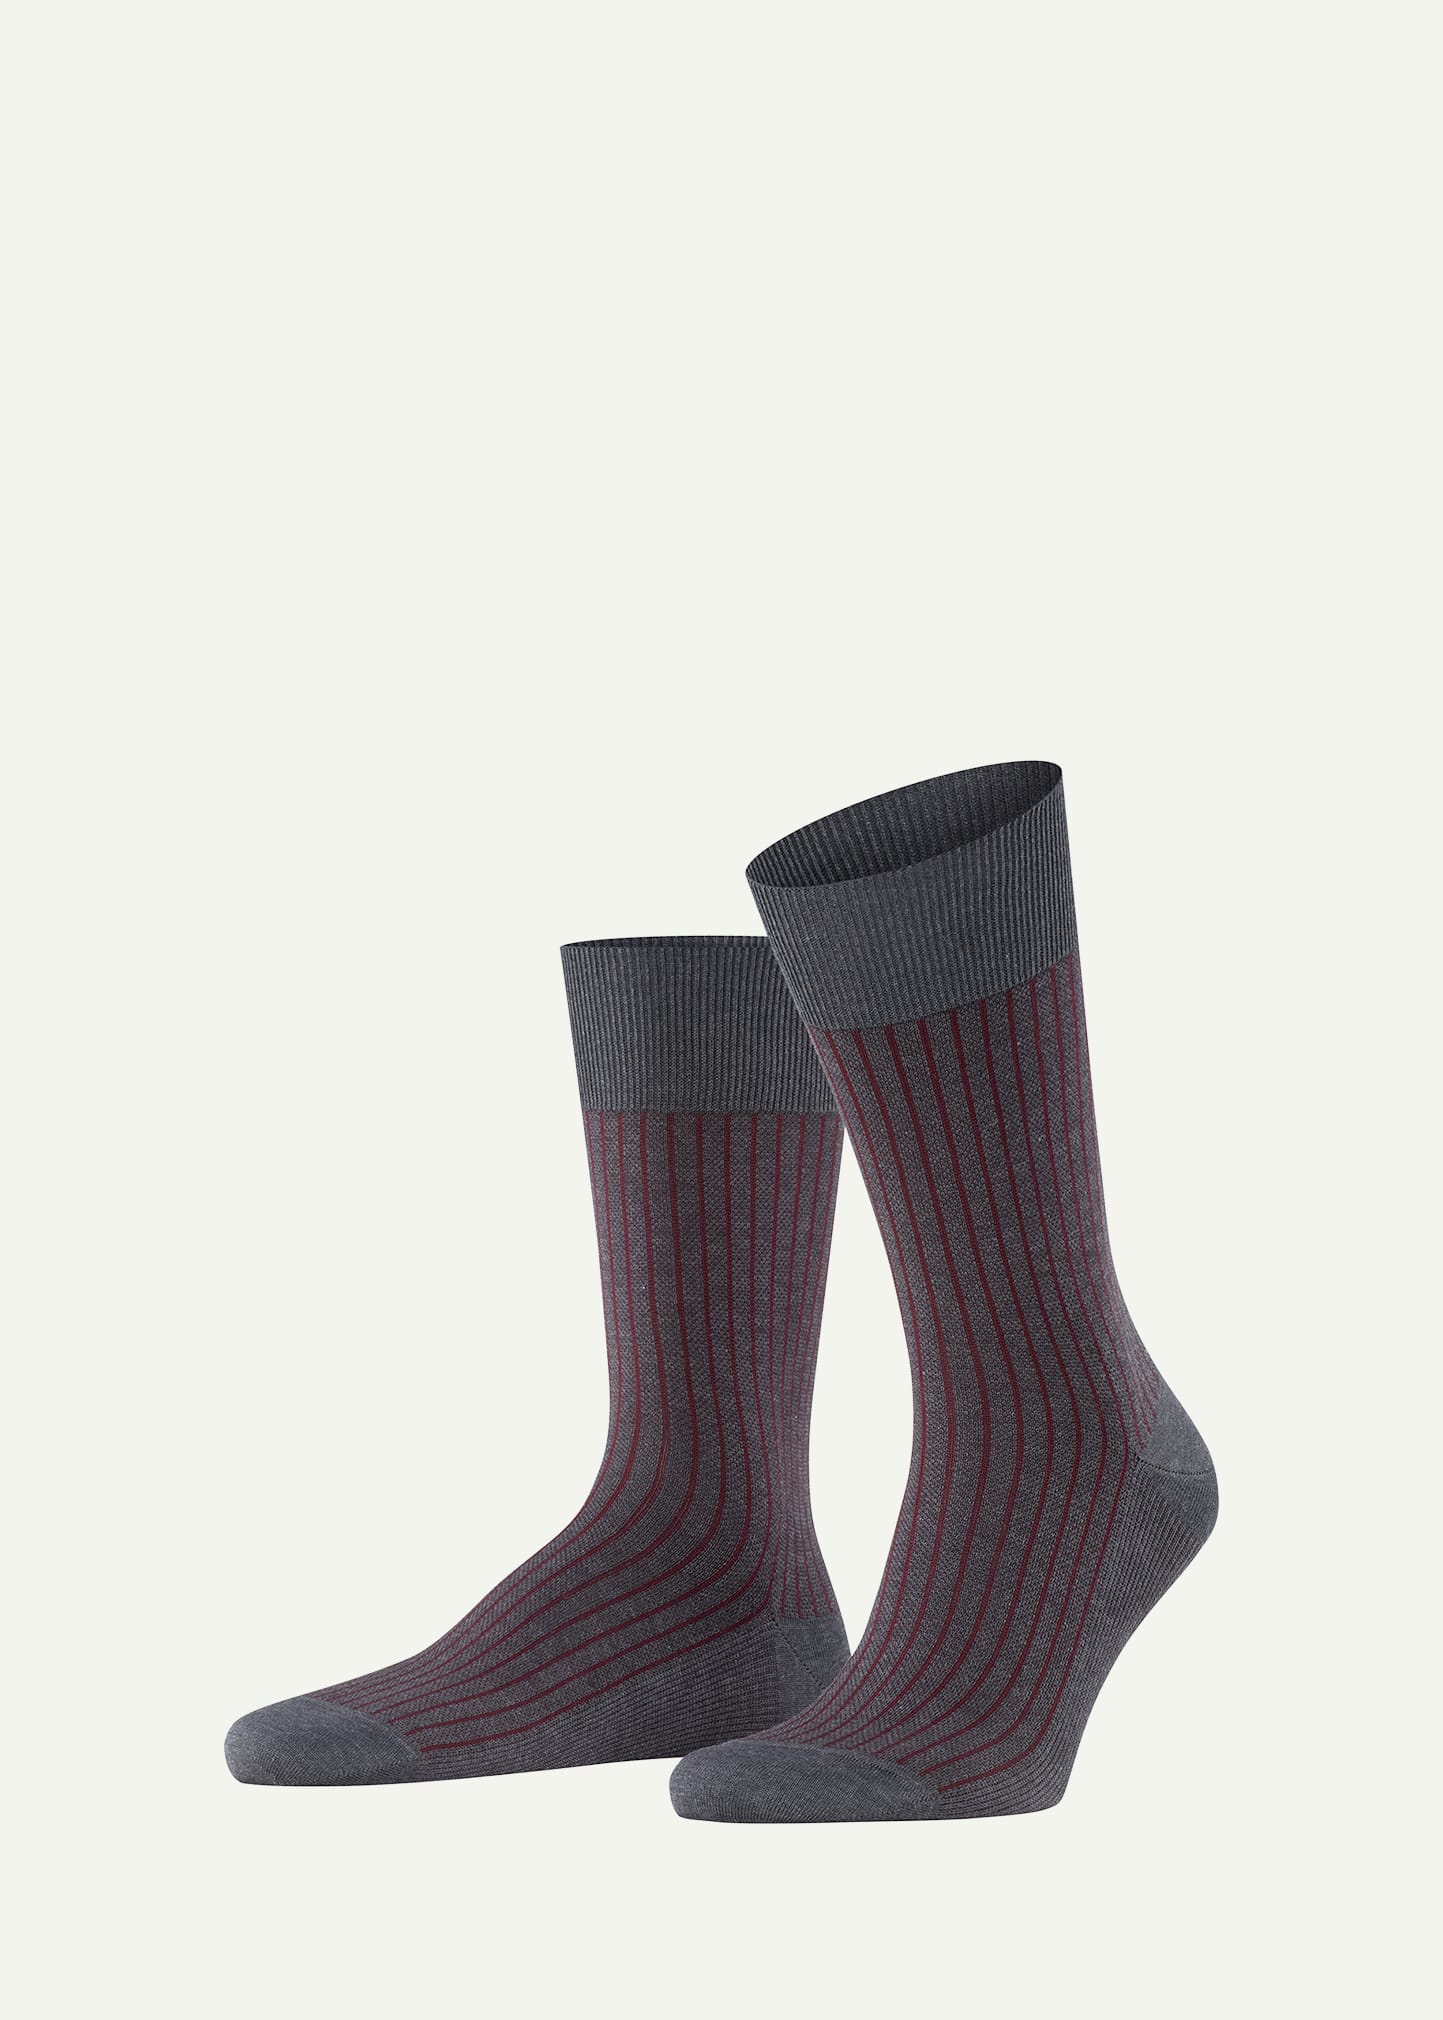 Falke Men's Cotton Stripe Mid-calf Socks In Grey-burgundy